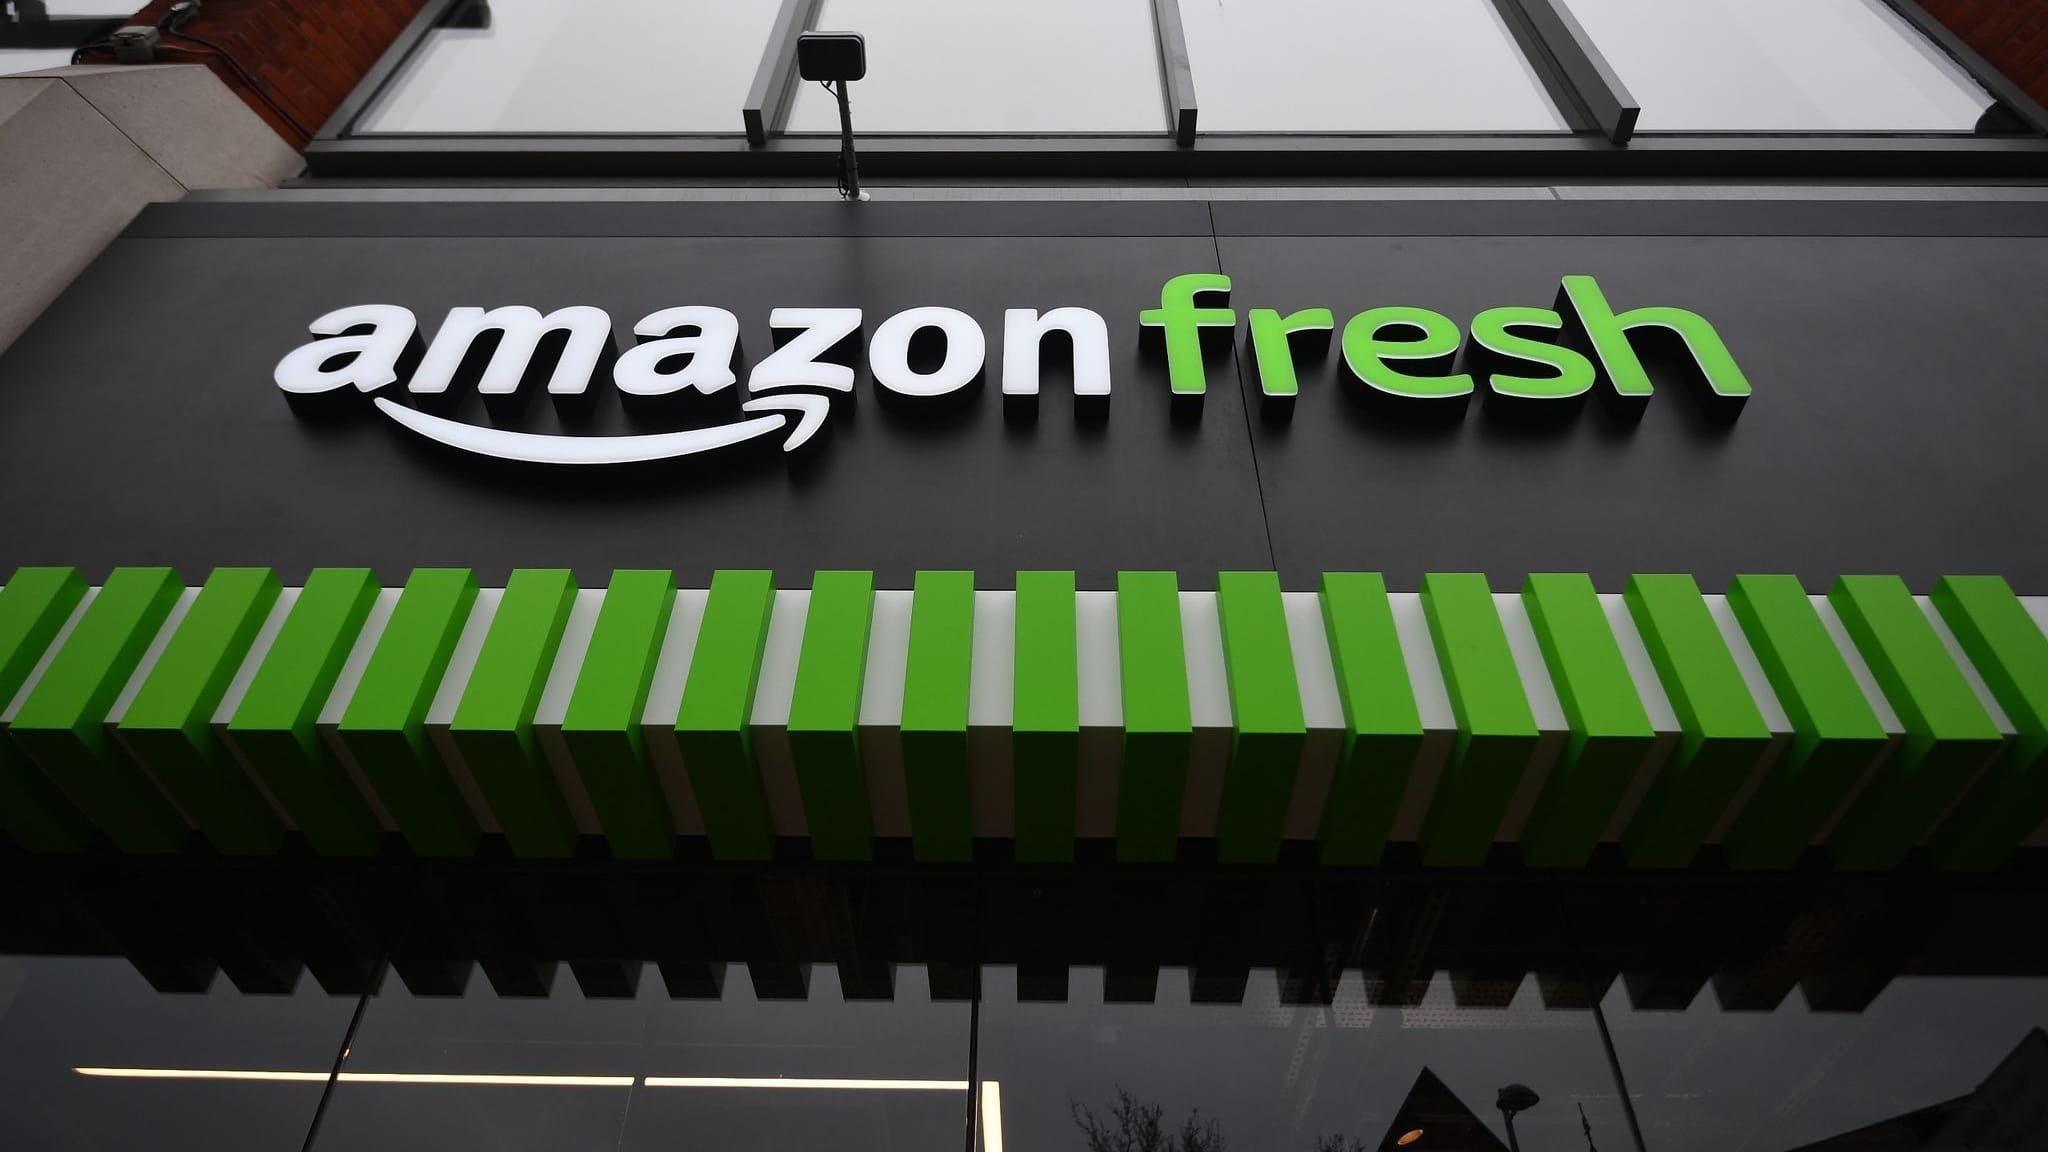 Amazon setzt in US-Supermärkten auf smarte Einkaufswagen